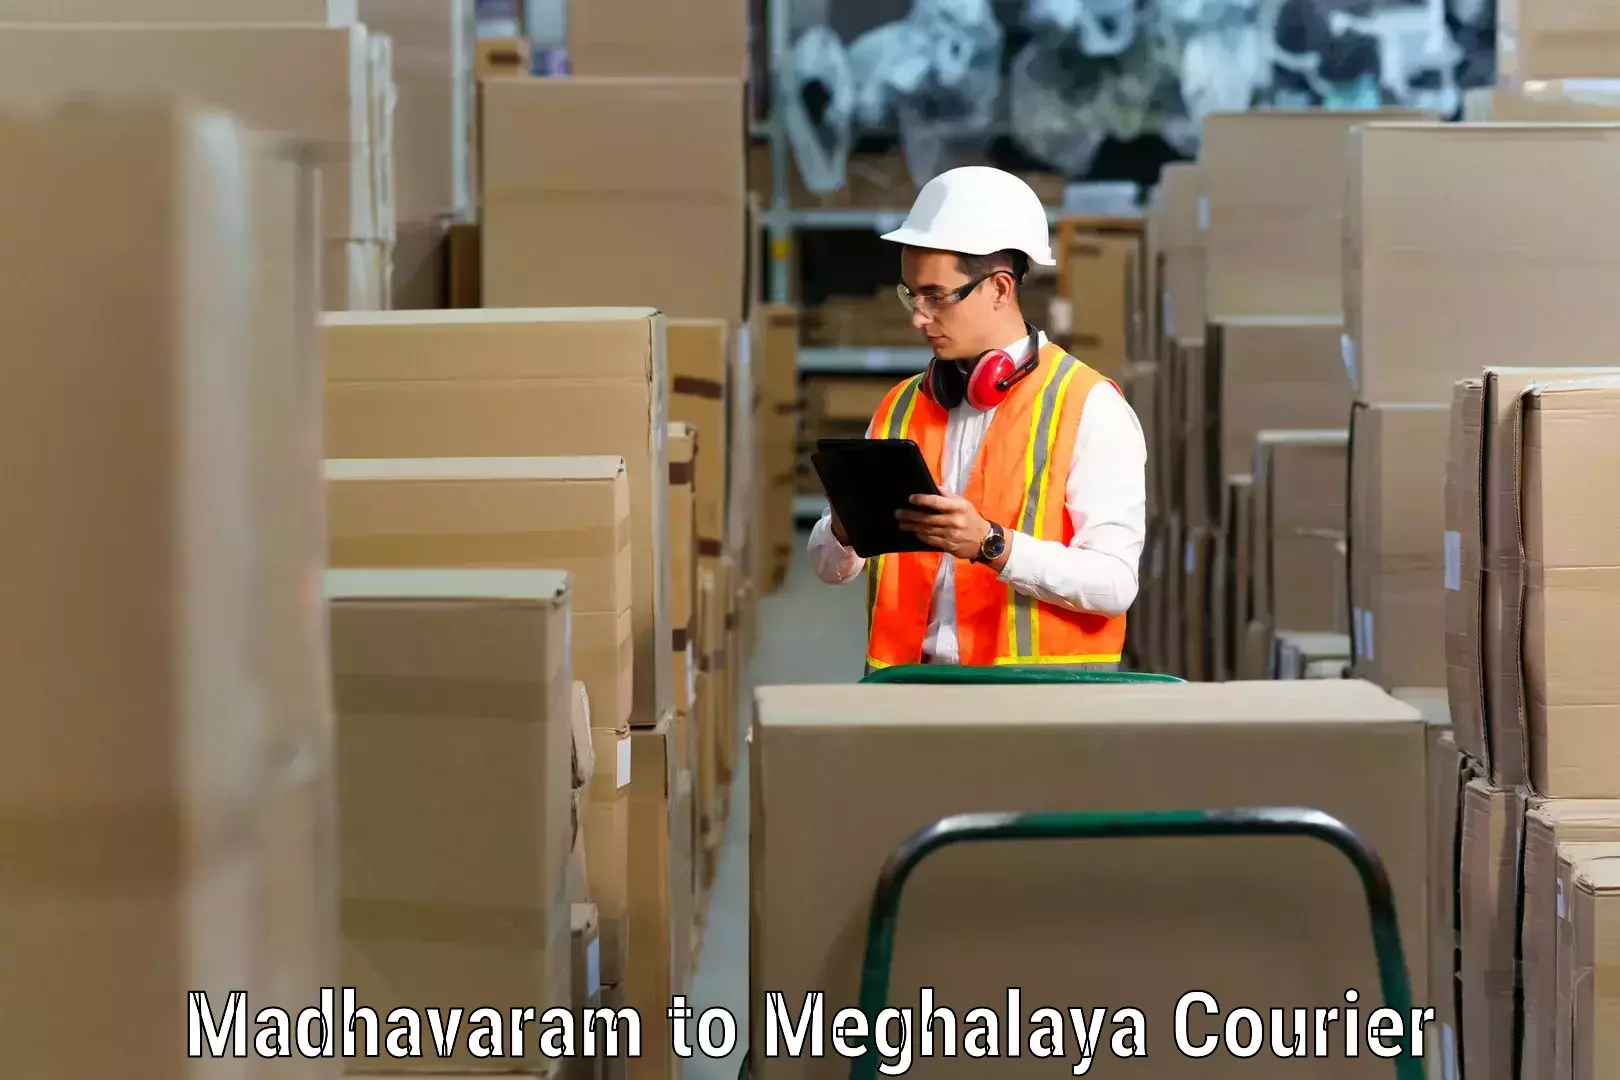 Furniture moving experts in Madhavaram to Jaintia Hills